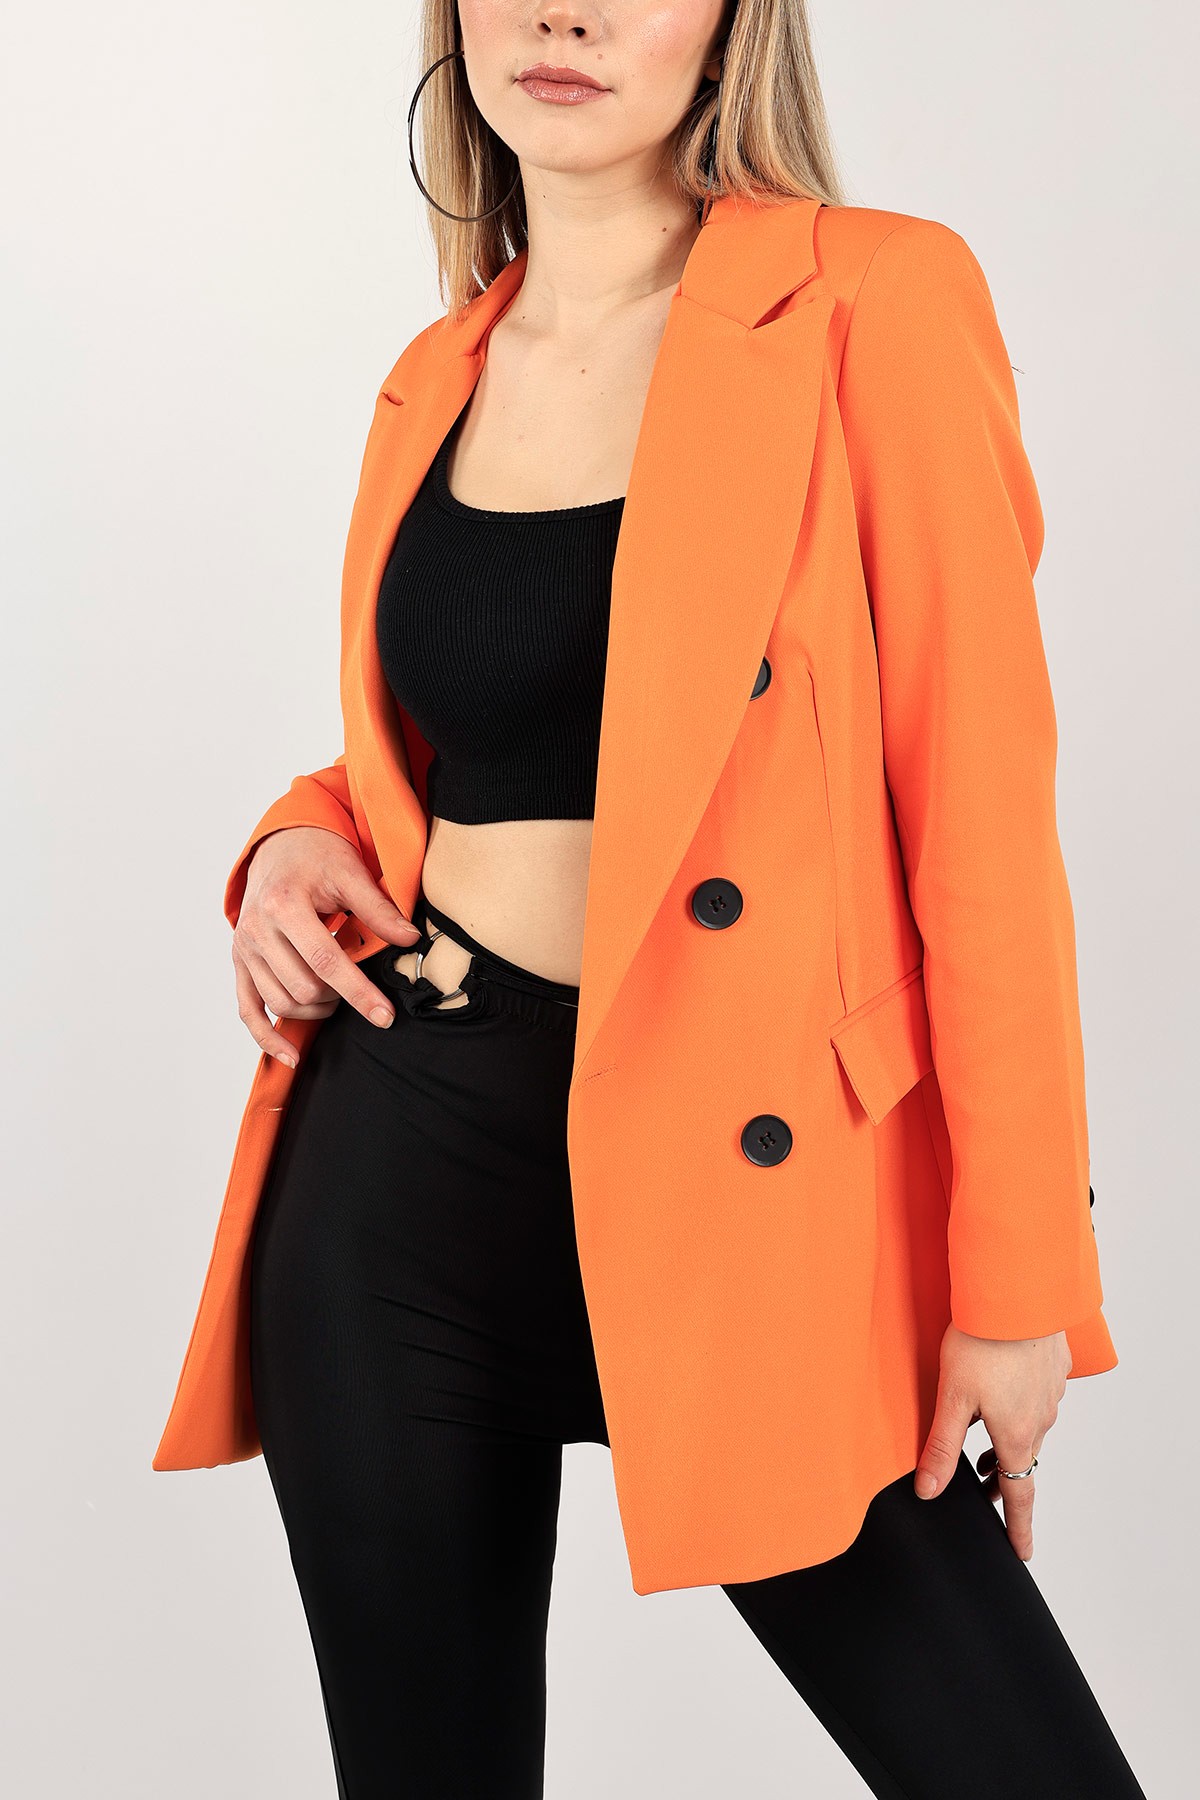 turuncu yeni sezon astarlı bayan ceket 110367 modamızbir modamizbir com